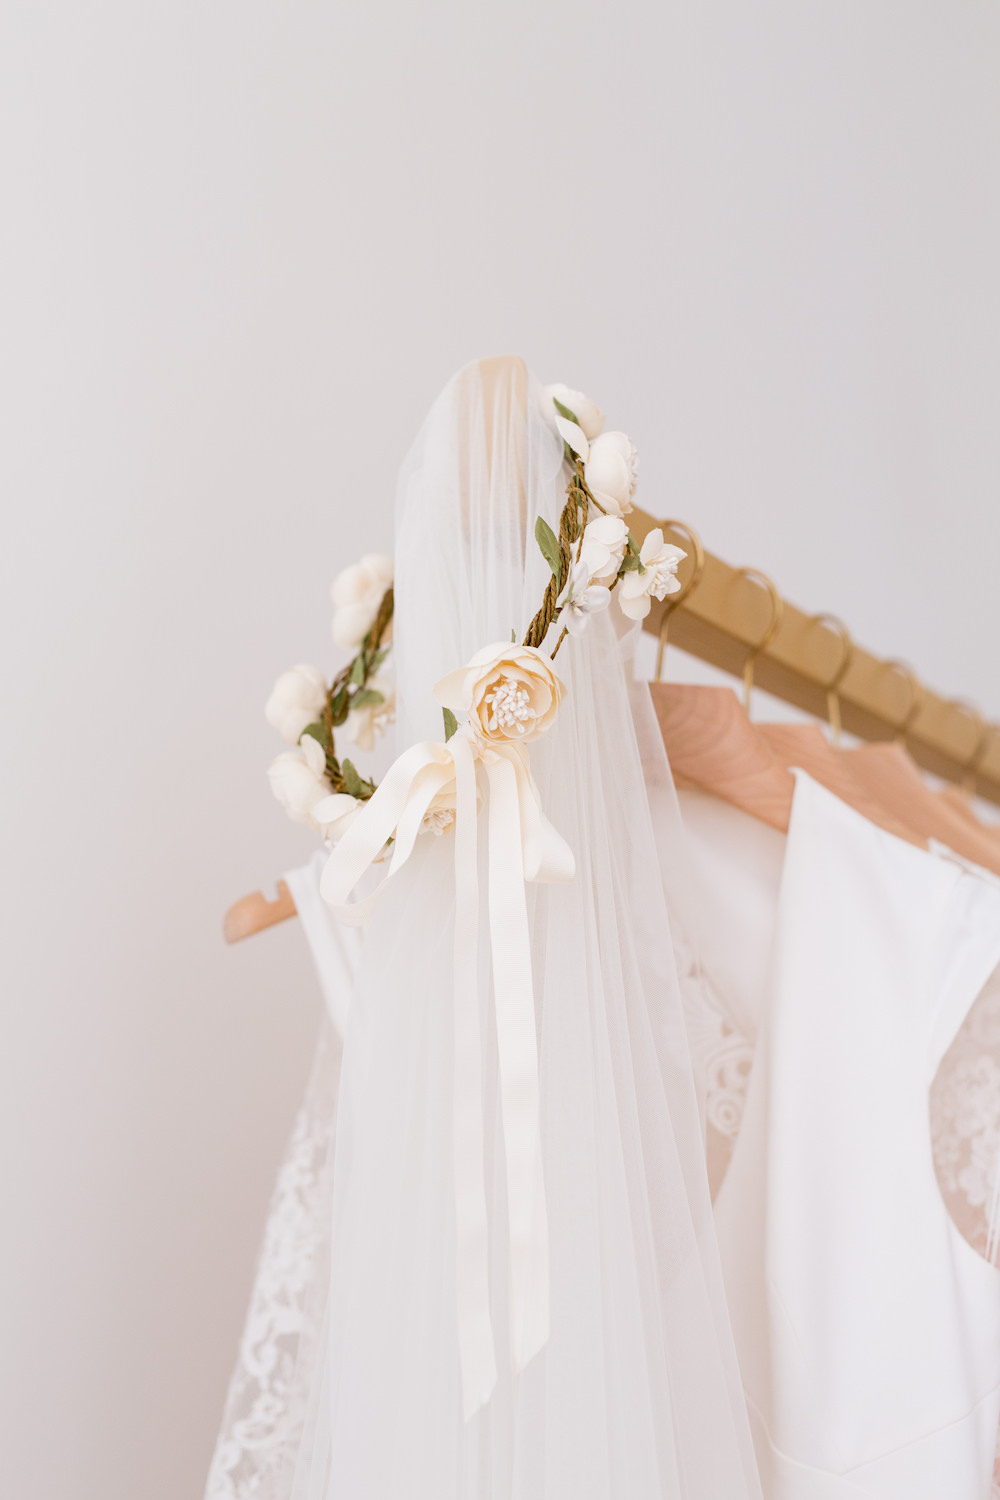 Olympe - le concept store de robes de mariée en Province - Blog Mariage Madame C